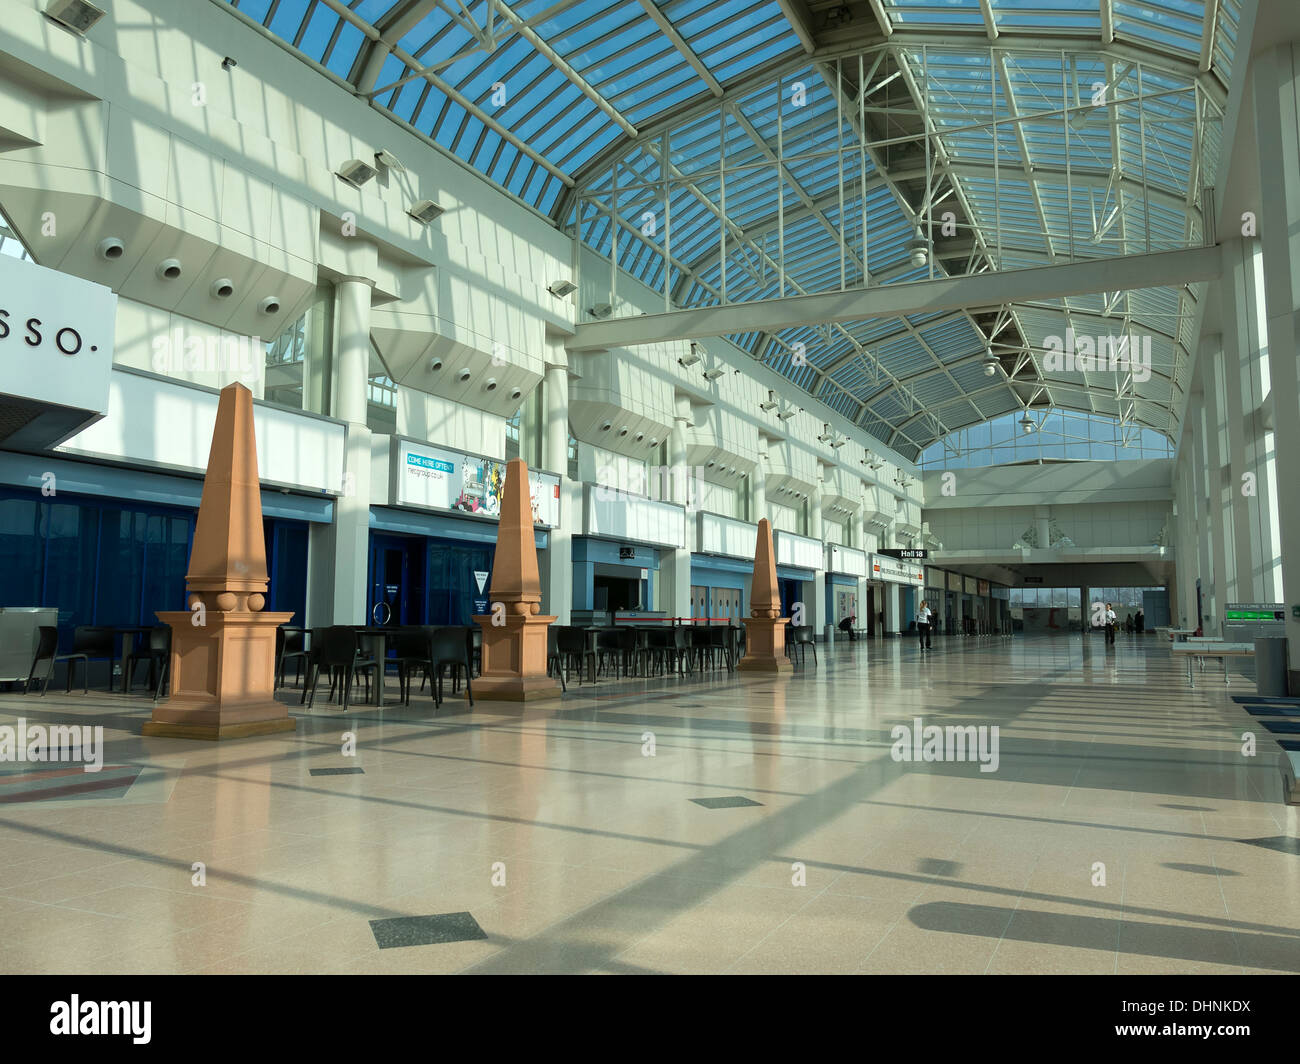 Atrium ensoleillé plaza à NEC National Exhibition Centre, Birmingham, Angleterre, Royaume-Uni. Banque D'Images